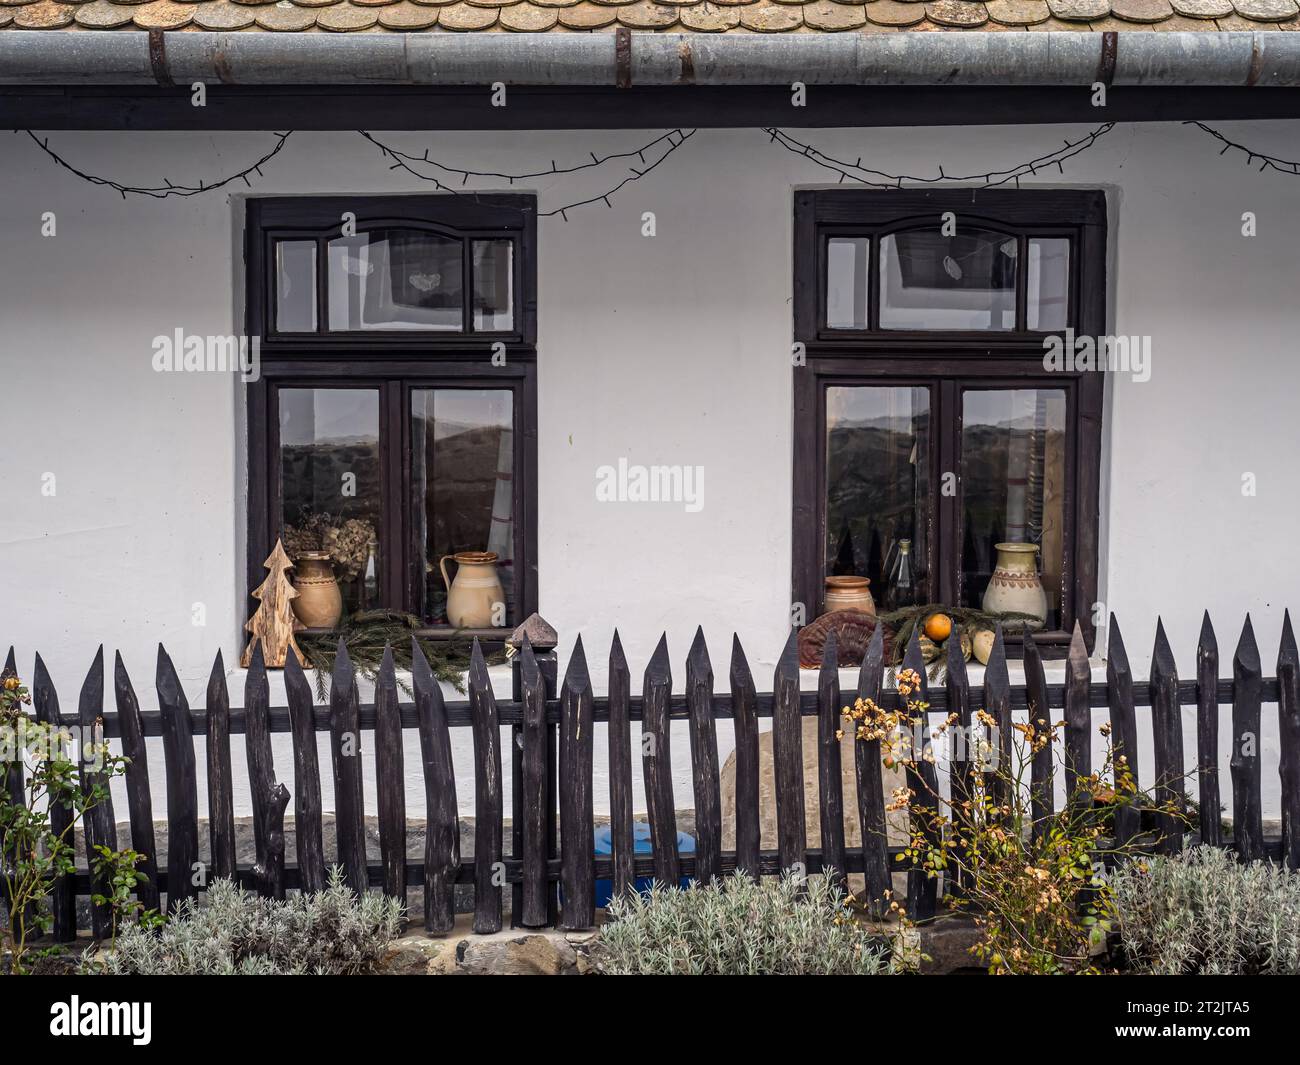 Frontale Detailansicht eines traditionellen Dorfhauses mit weißen Wänden, Holzfenstern und Zaun, Töpfen und Pflanzen als Dekoration, Holloko, Ungarn, Ostern Stockfoto